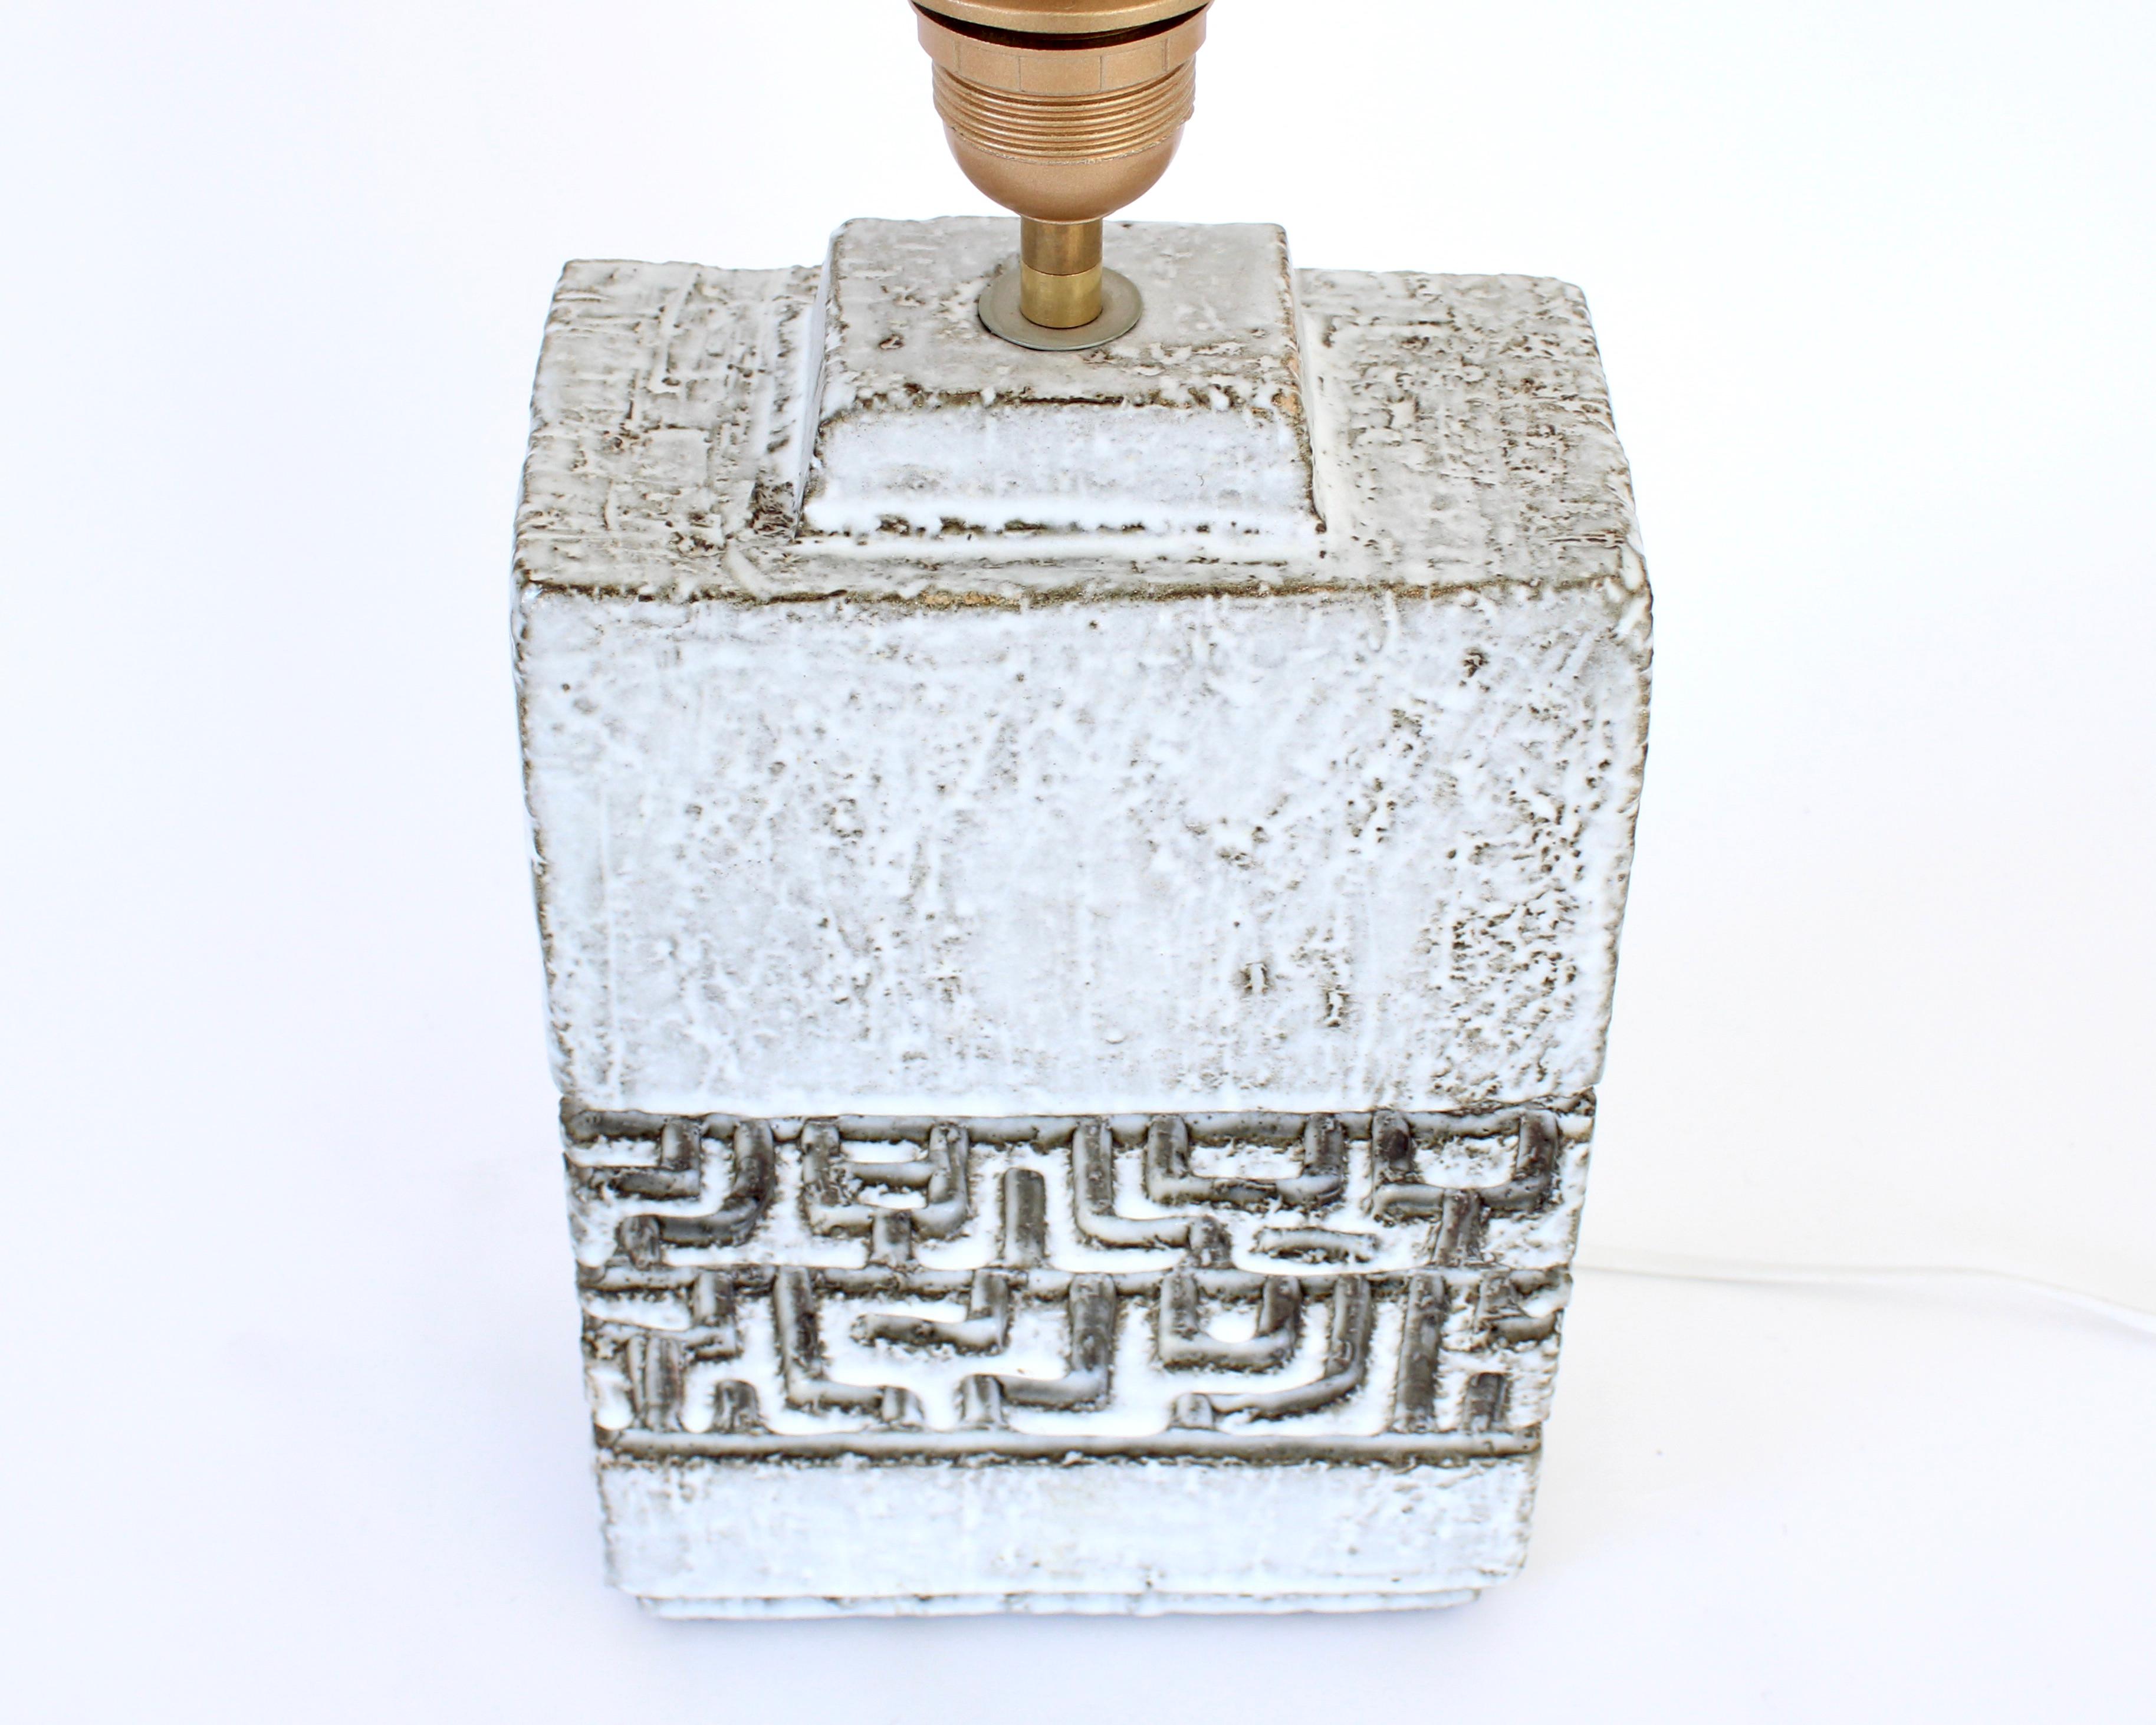 Marius Bessone Ceramic Table Lamp France c 1960 - 1970 Vallauris For Sale 5